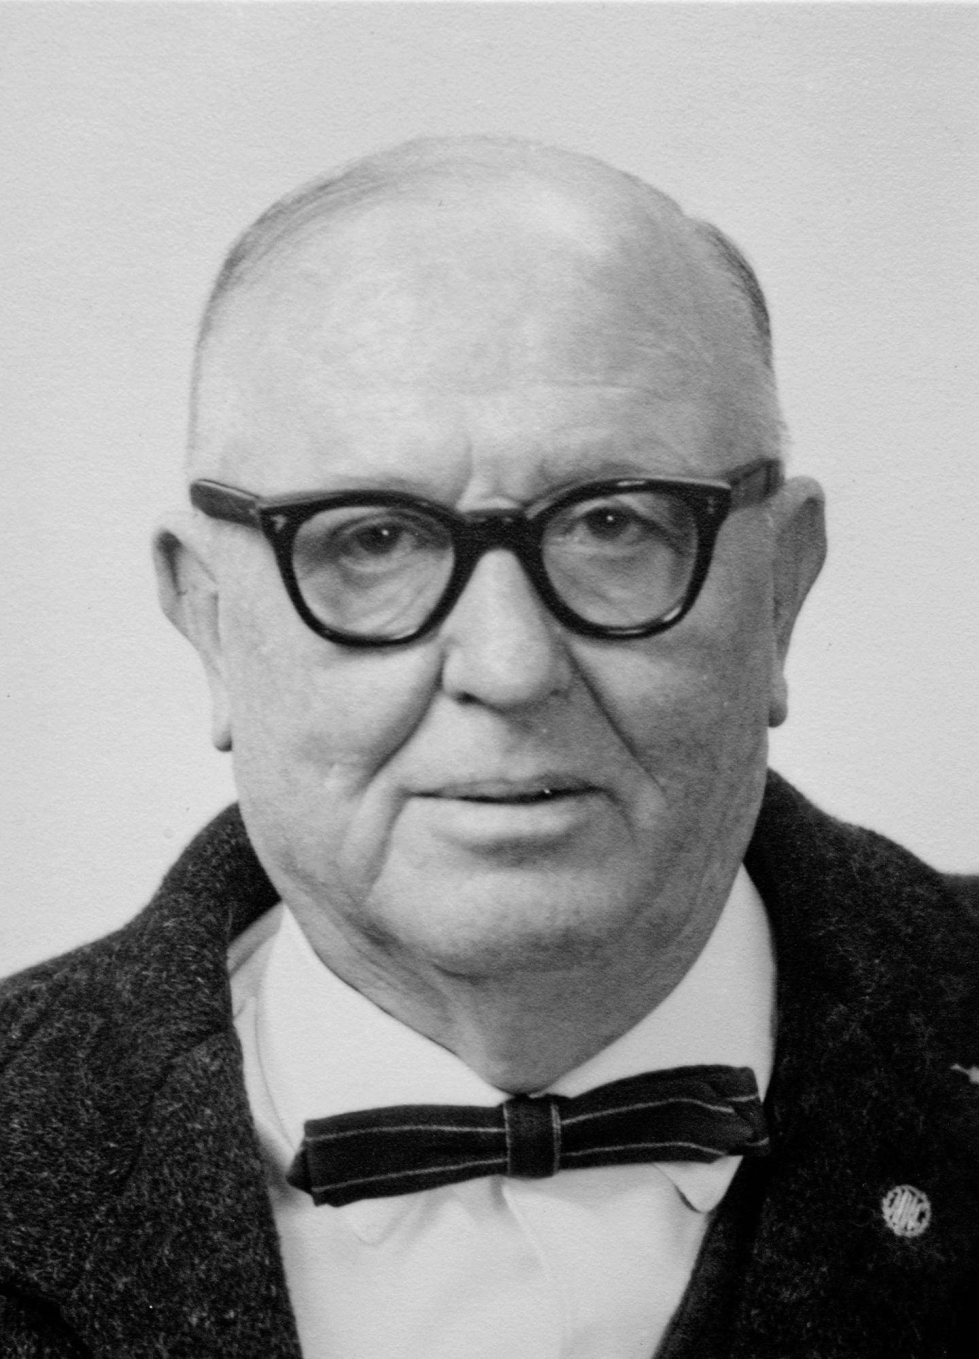 Ernst Hemicker vuonna 1965, jolloin häntä kuulusteltiin ensimmäistä kertaa Rumbulan verilöylyyn liittyen.